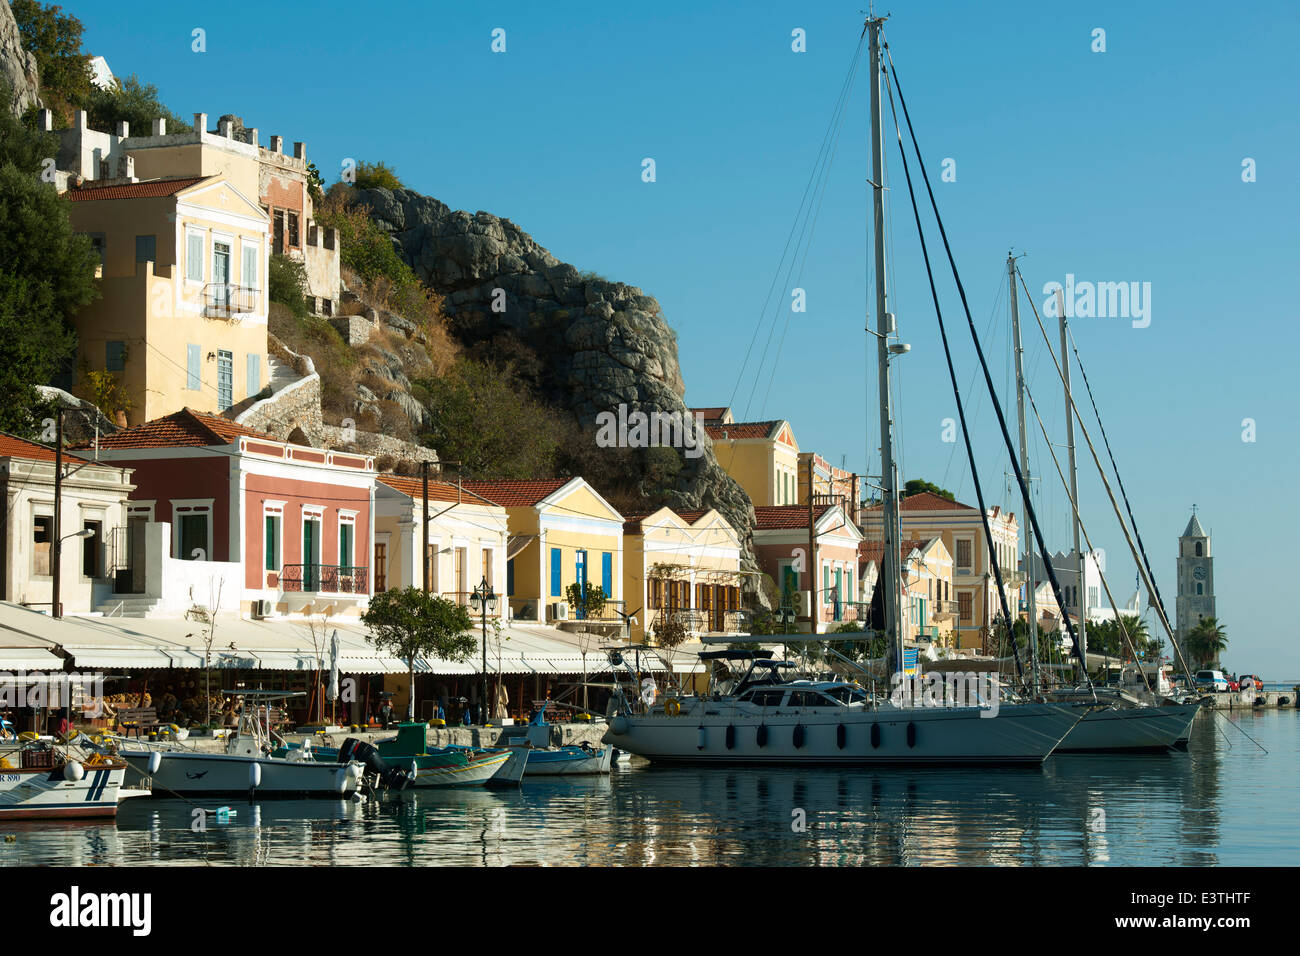 Griechenland, Symi, Gialos, Yachten im Hafen Stock Photo